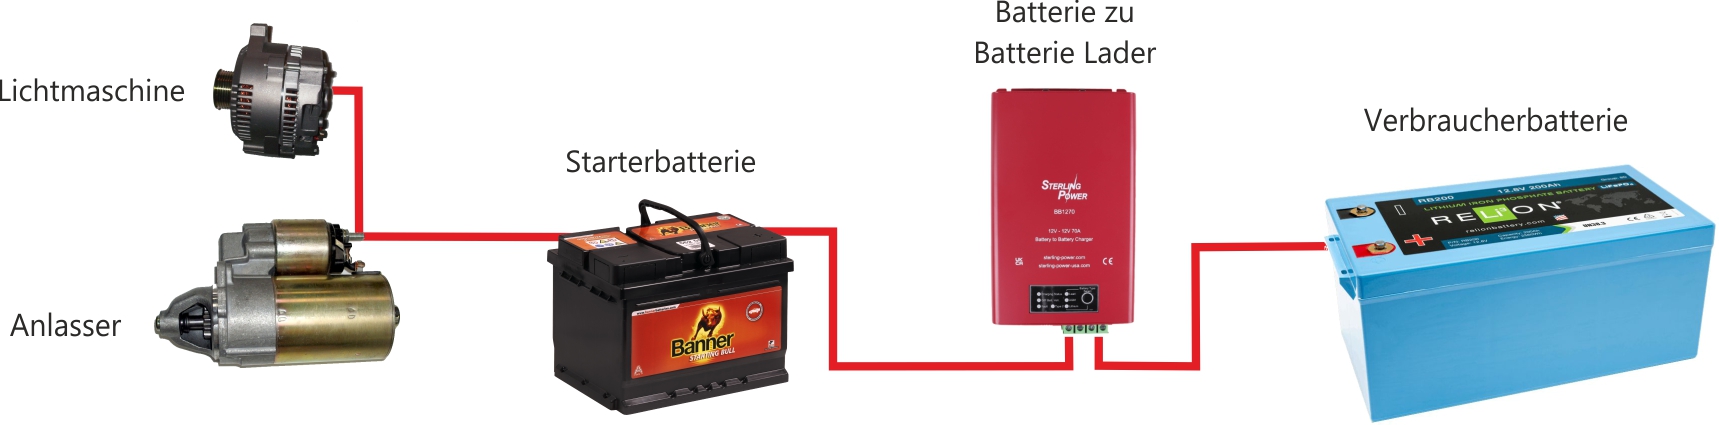 Schaltung mit Batterie zu Batterie Lader